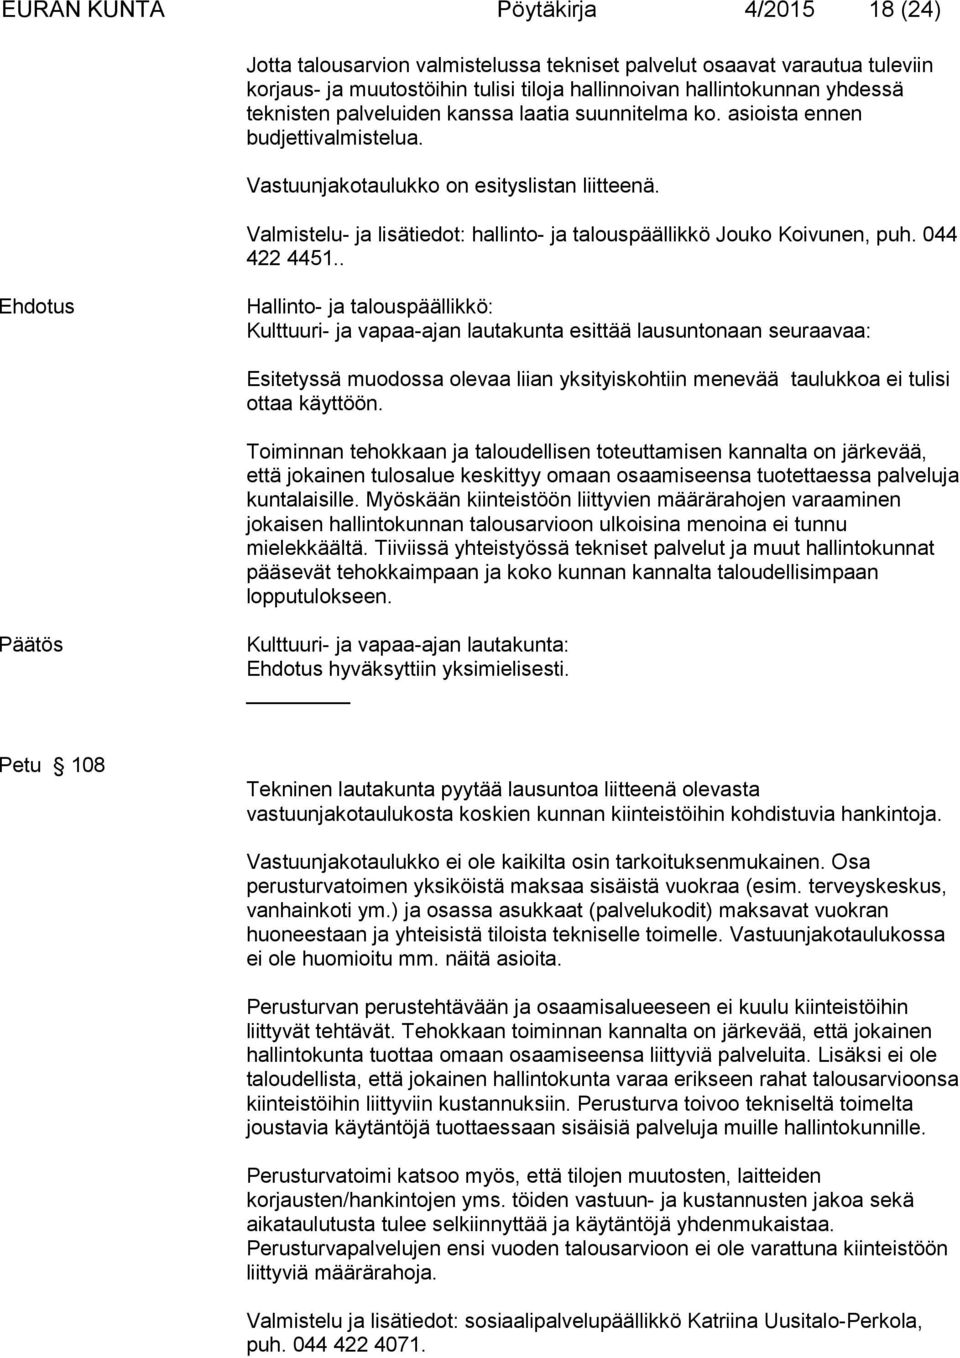 Valmistelu- ja lisätiedot: hallinto- ja talouspäällikkö Jouko Koivunen, puh. 044 422 4451.